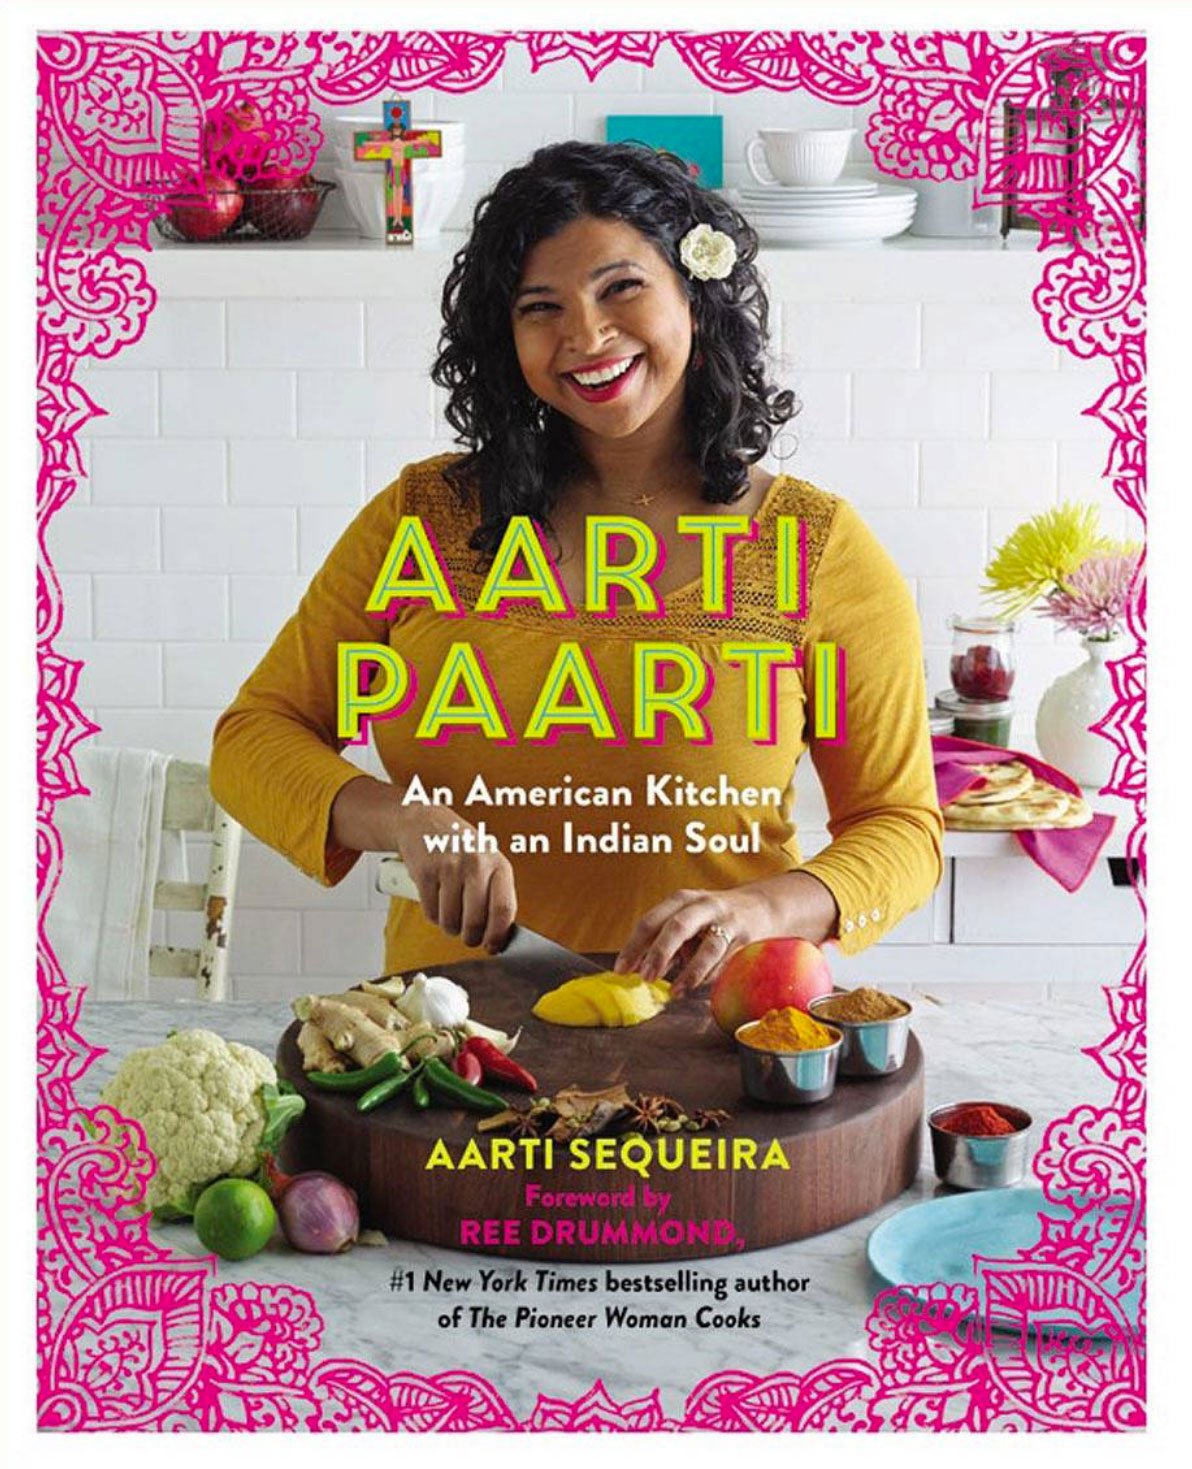 Aaarti-Party-Cookbook.jpg